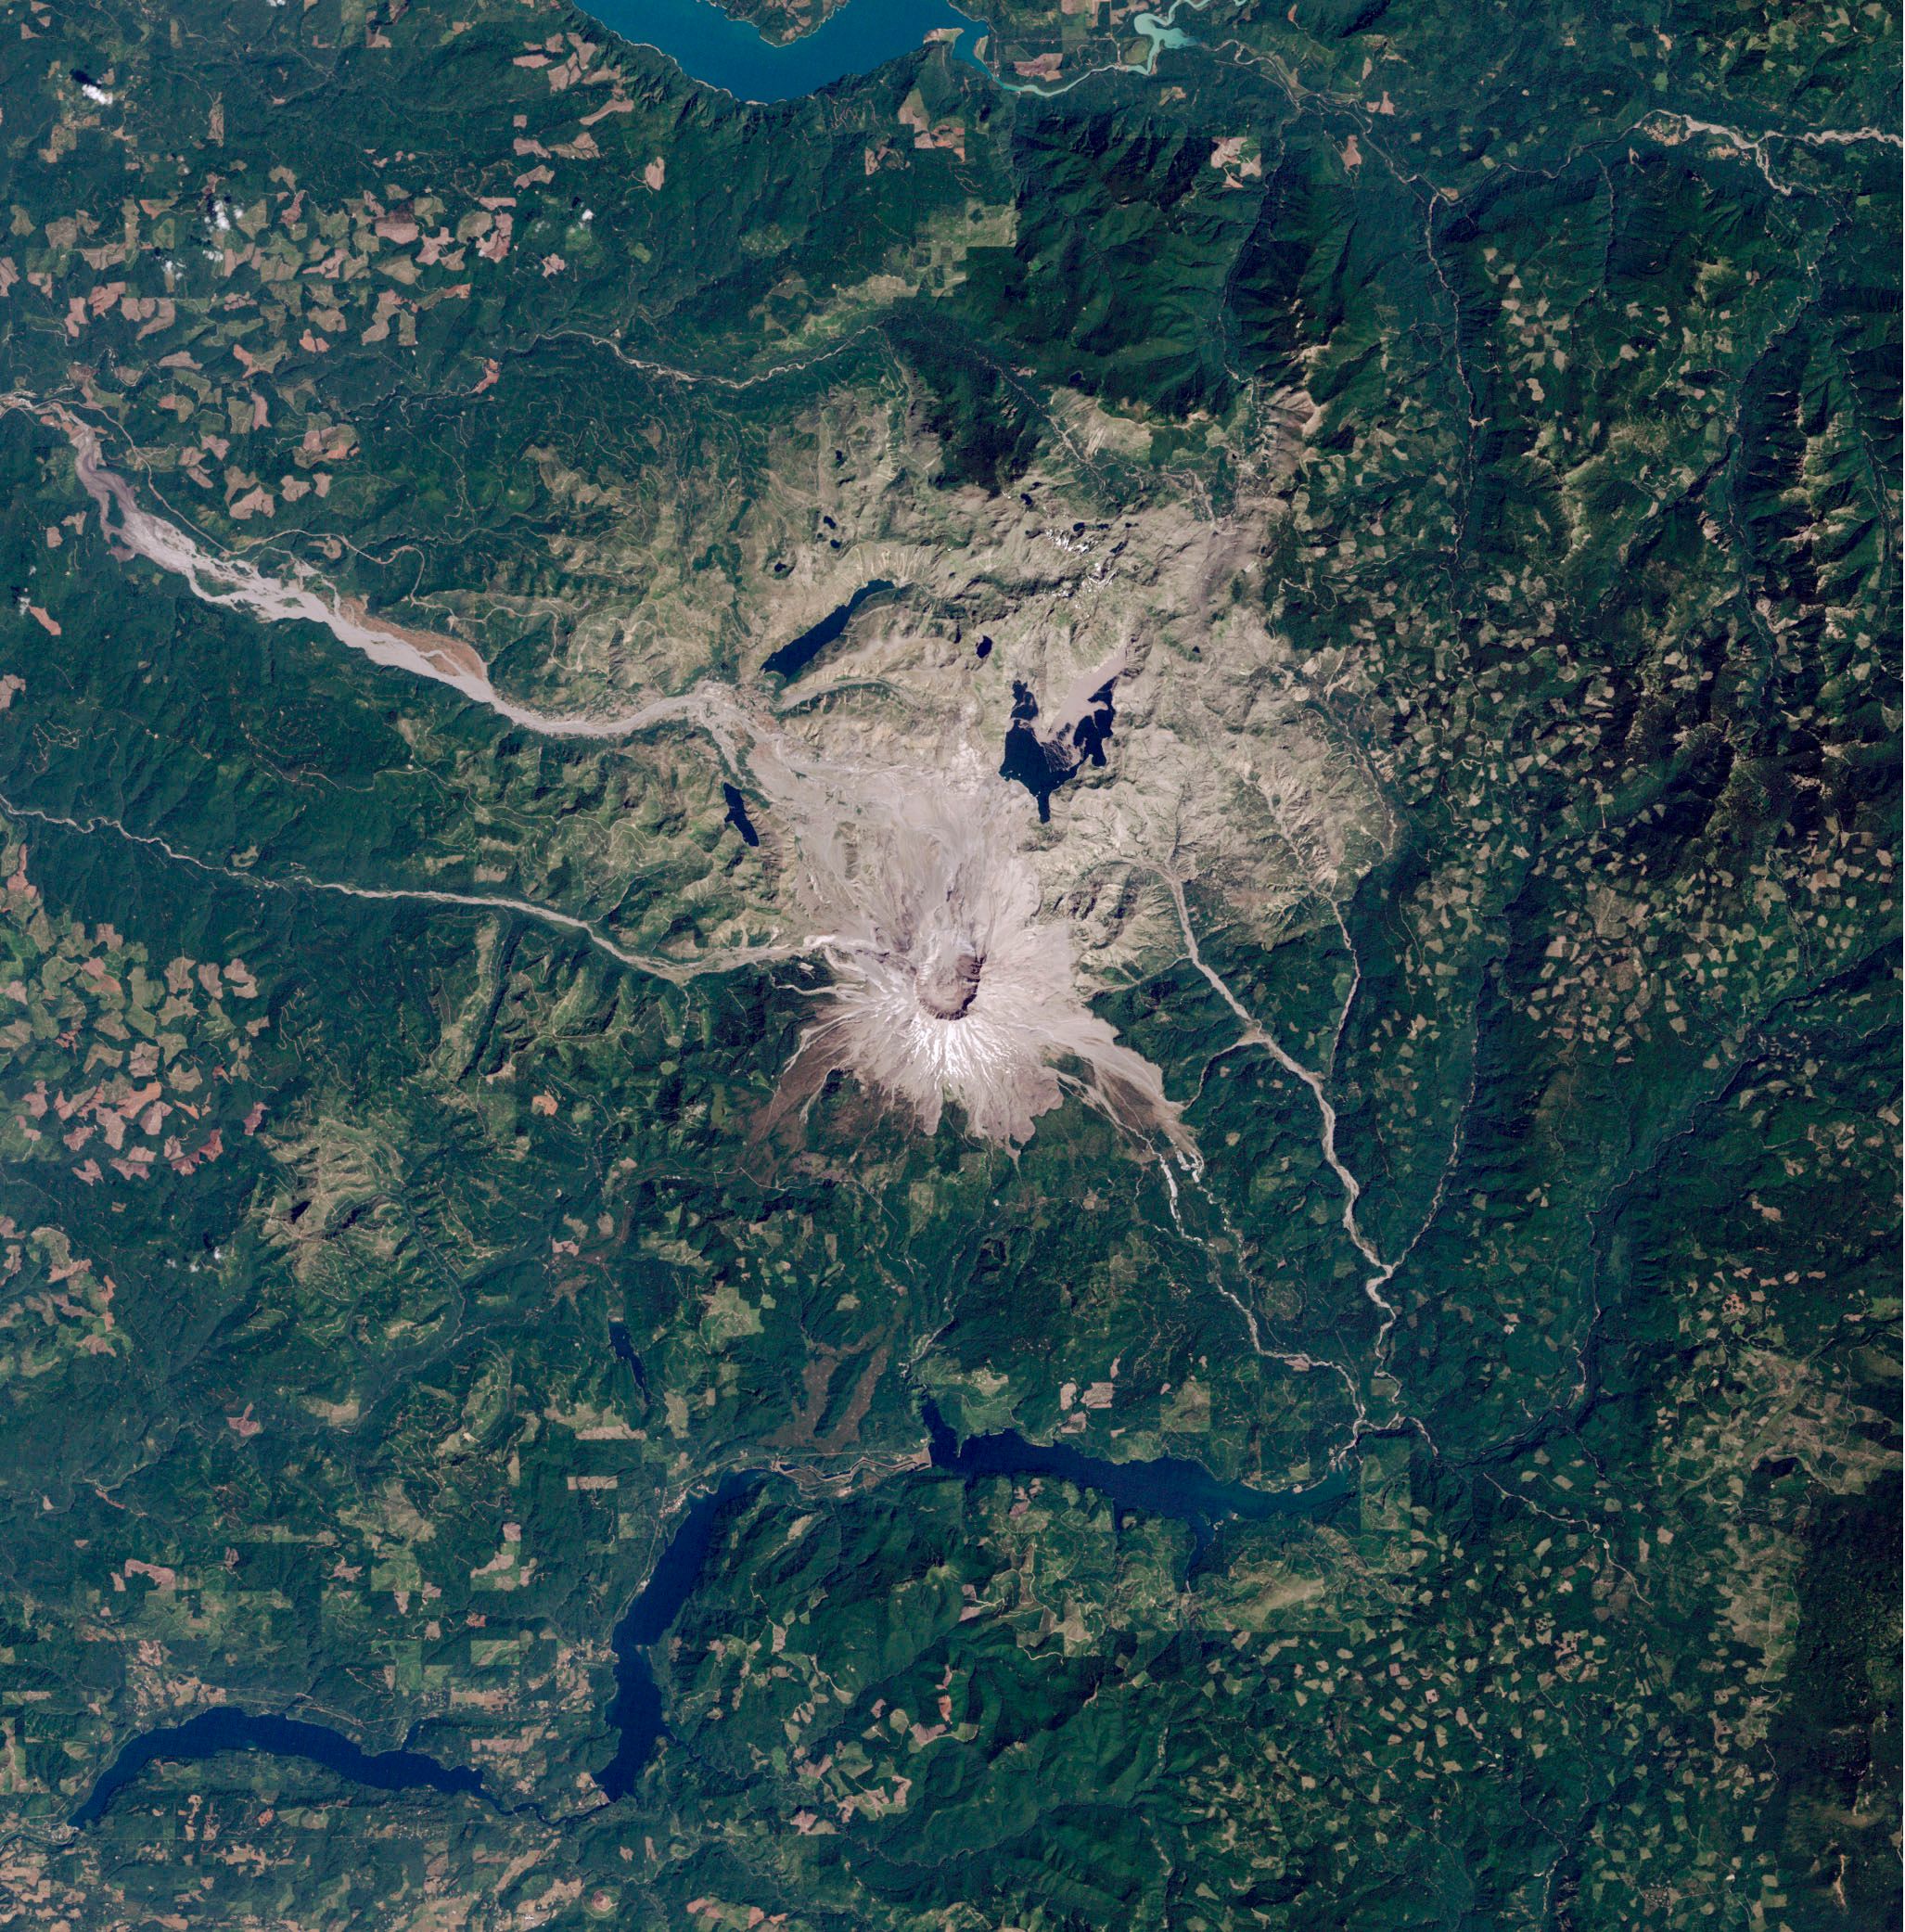 Mittig im Bild ist der grau-braune Mount St. Helens zu sehen sowie die ihn umgebende, gleichfarbige Vulkanlandschaft. Die Satellitenaufnahme zeigt um das Gebiet herum grüne Landschaft und oben und unten im Bild blaue Stauseen.